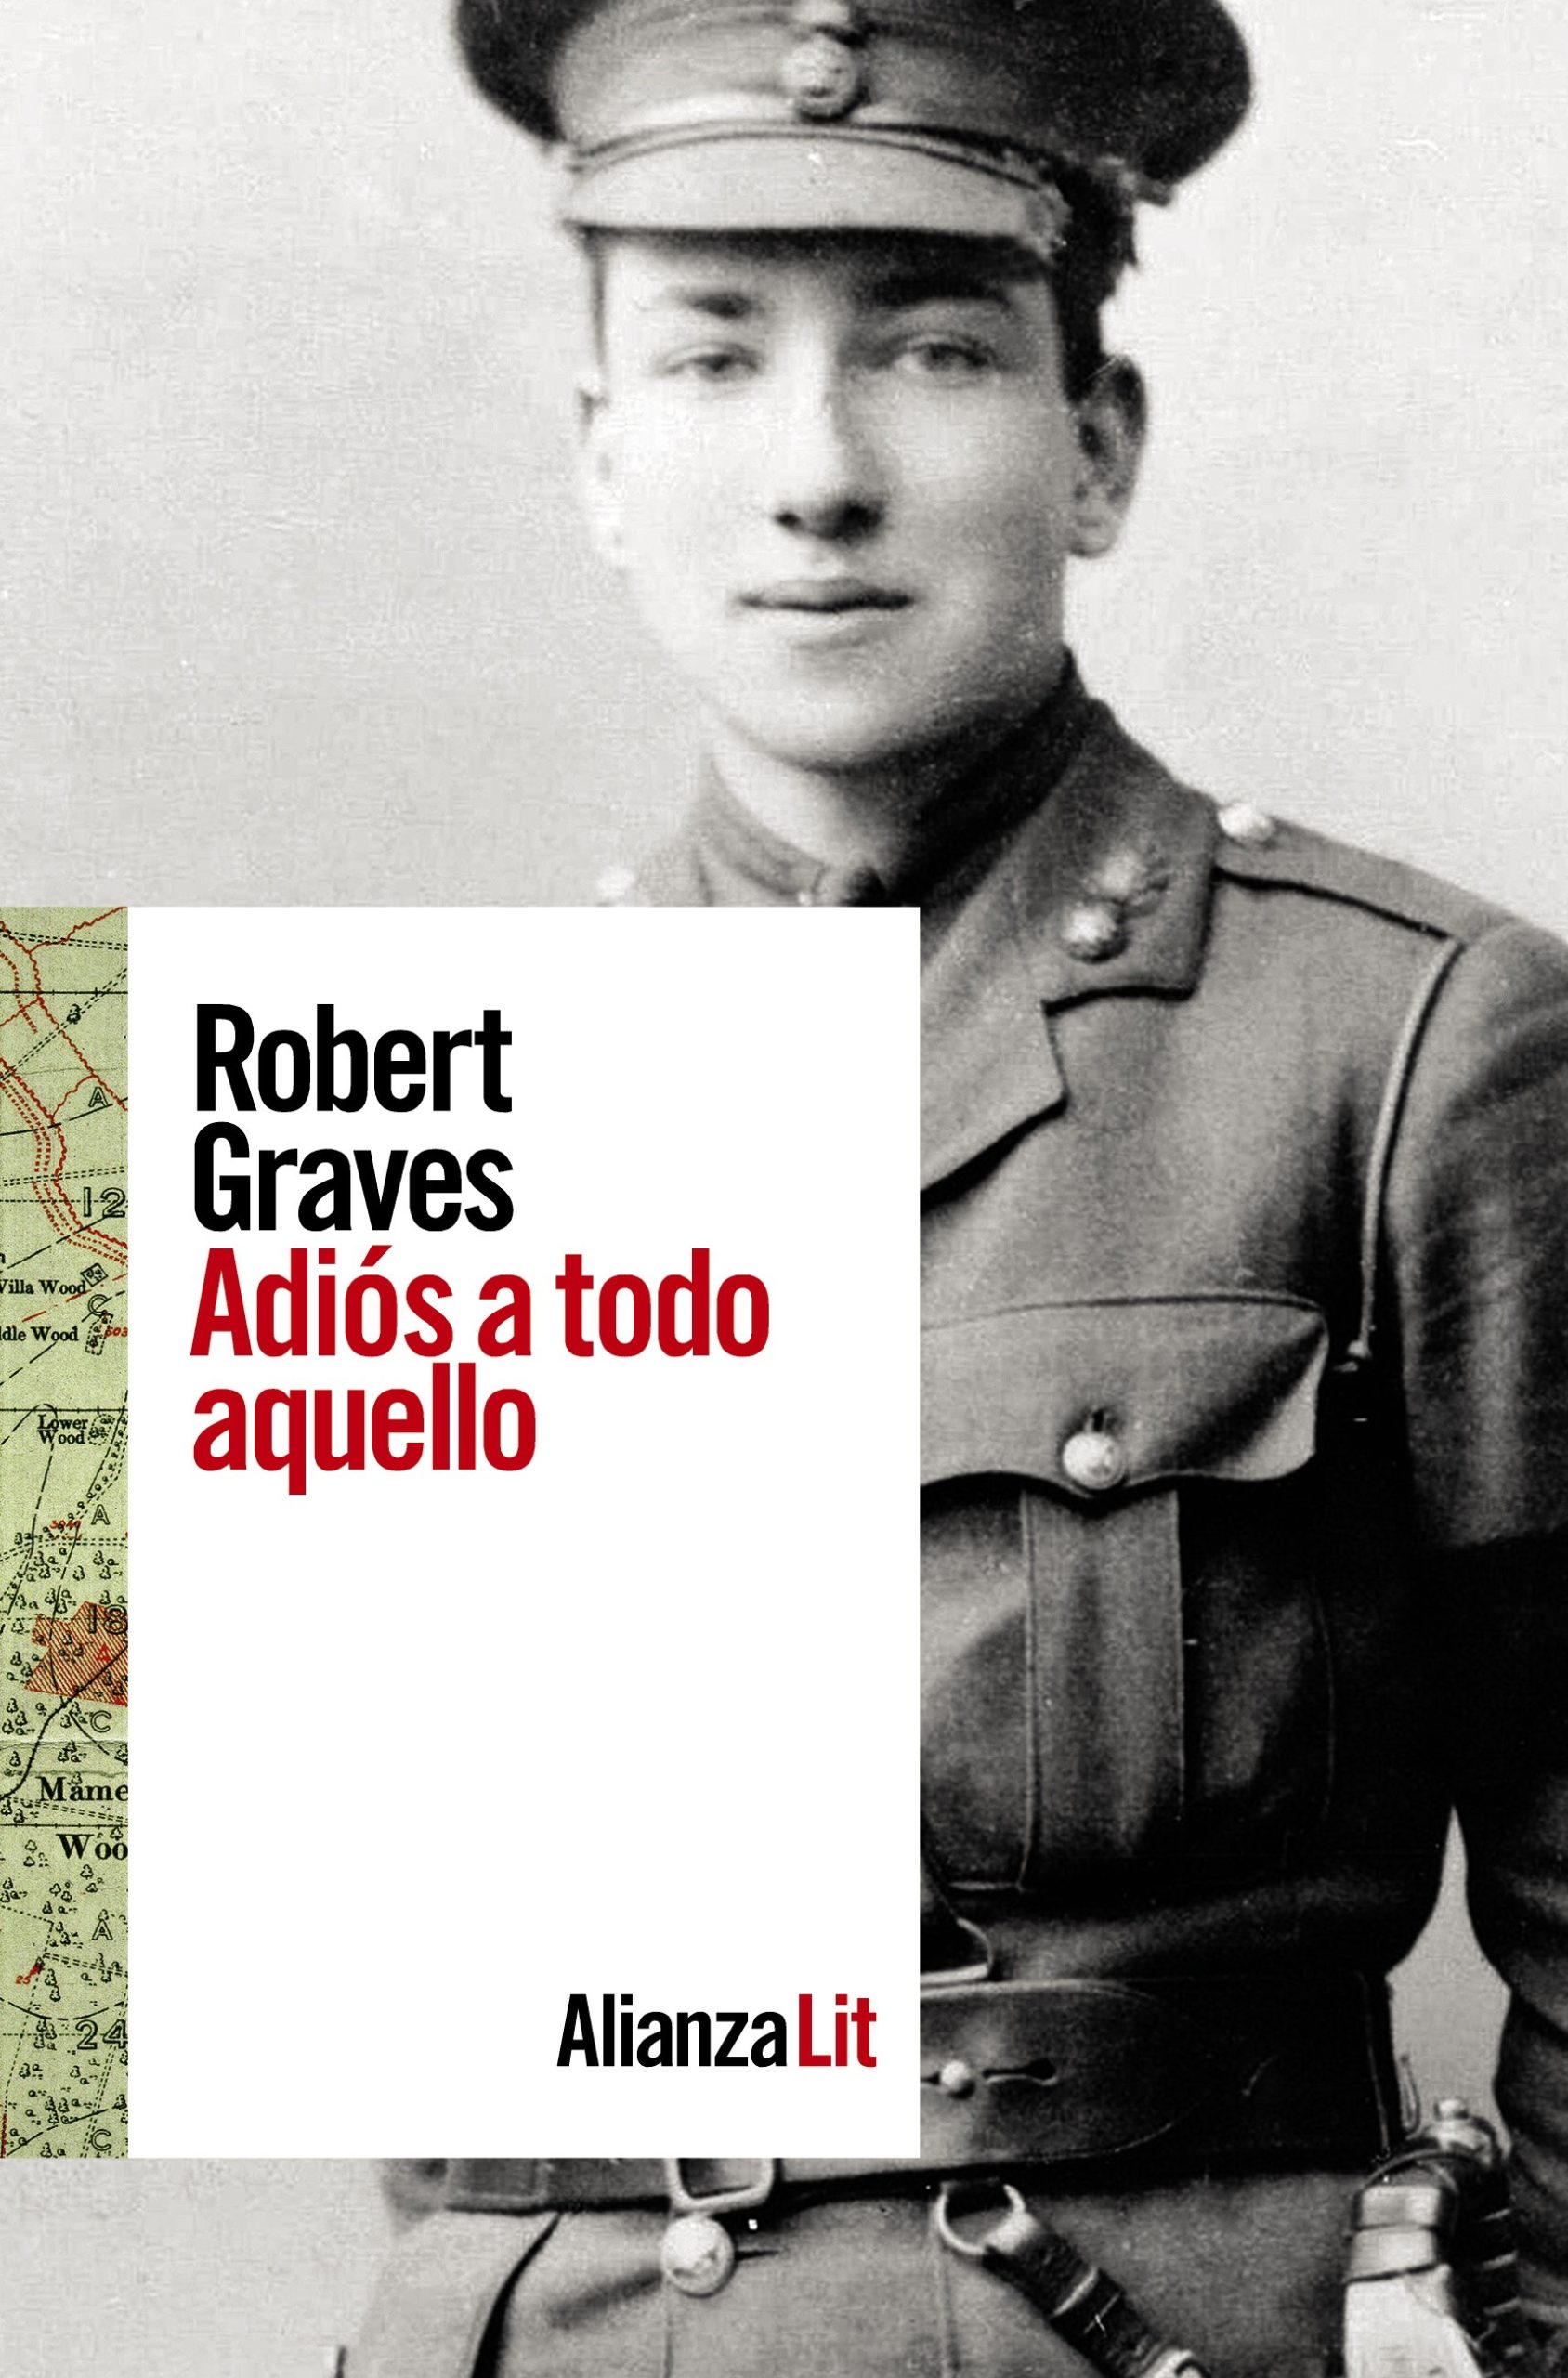 Portada libro Robert Graves